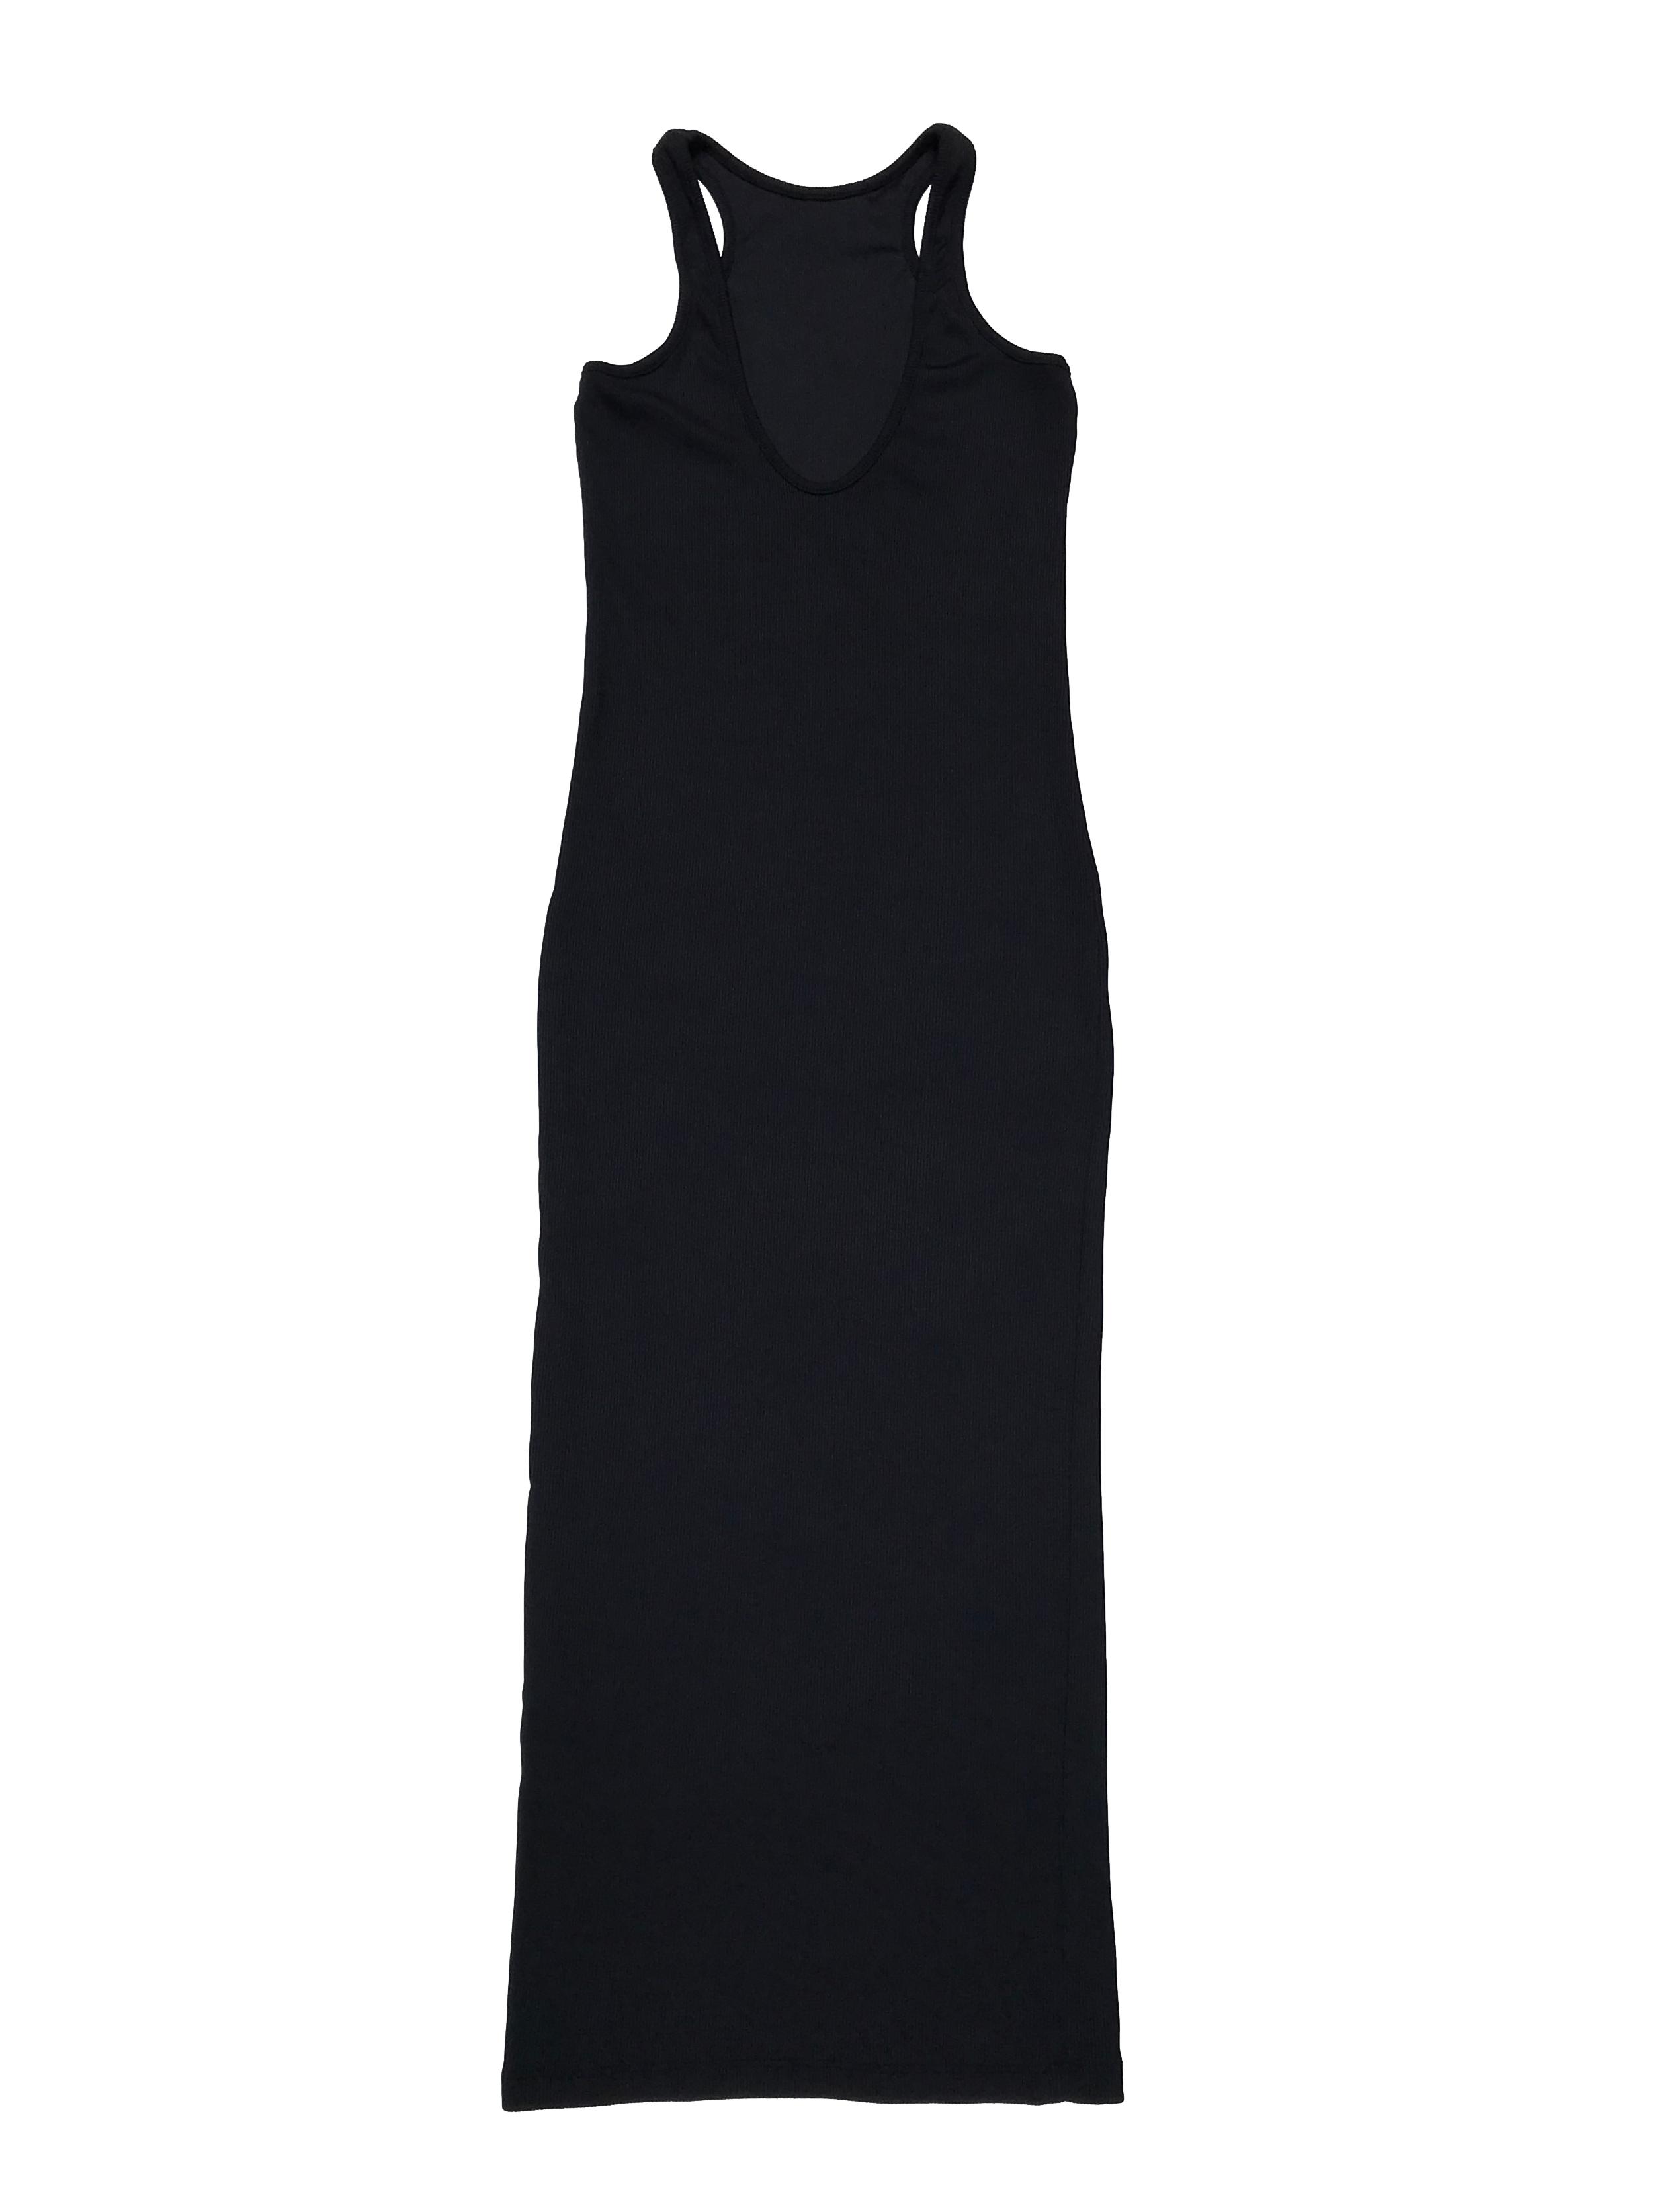 Vestido midi corte tubo, negro acanalado, espalda olímpica. Largo 105cm